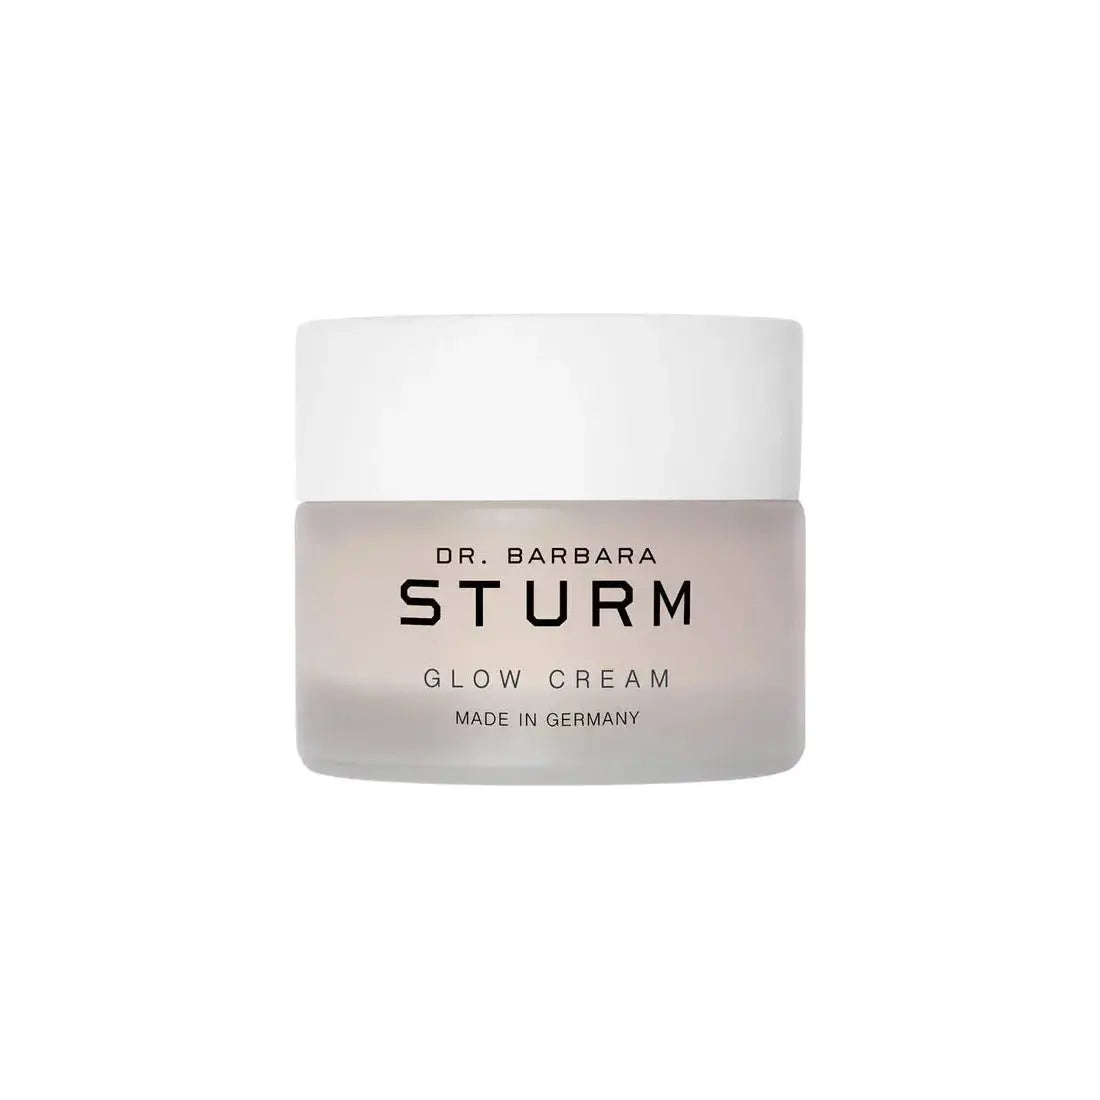 Dr. Barbara Sturm Glow Cream - 50ml - Glam Global UK